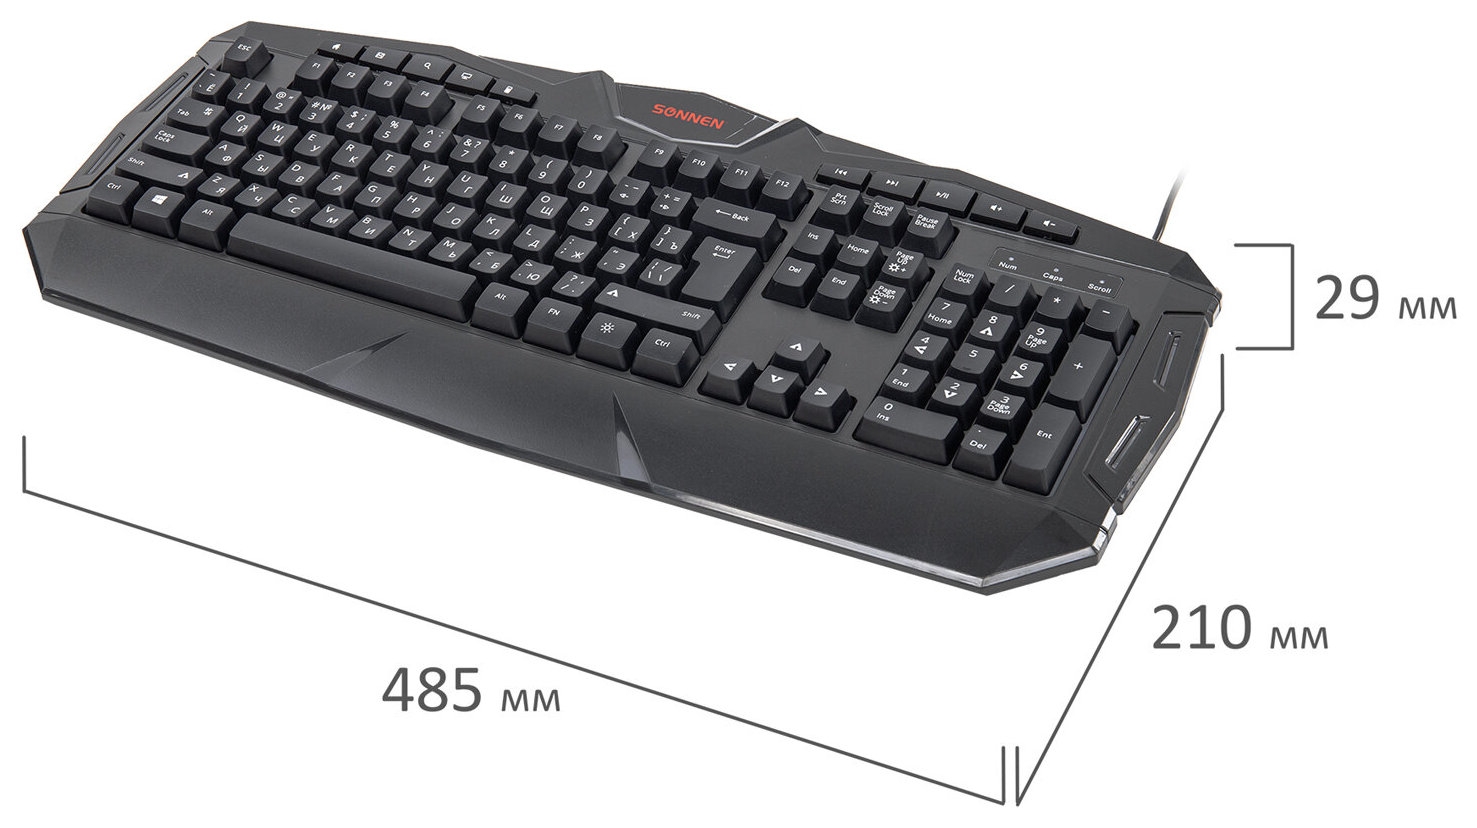 Клавиатура проводная игровая Sonnen Q9m, Usb, 104 клавиши + 10 мультимедийных, RGB подсветка, черная, 513511